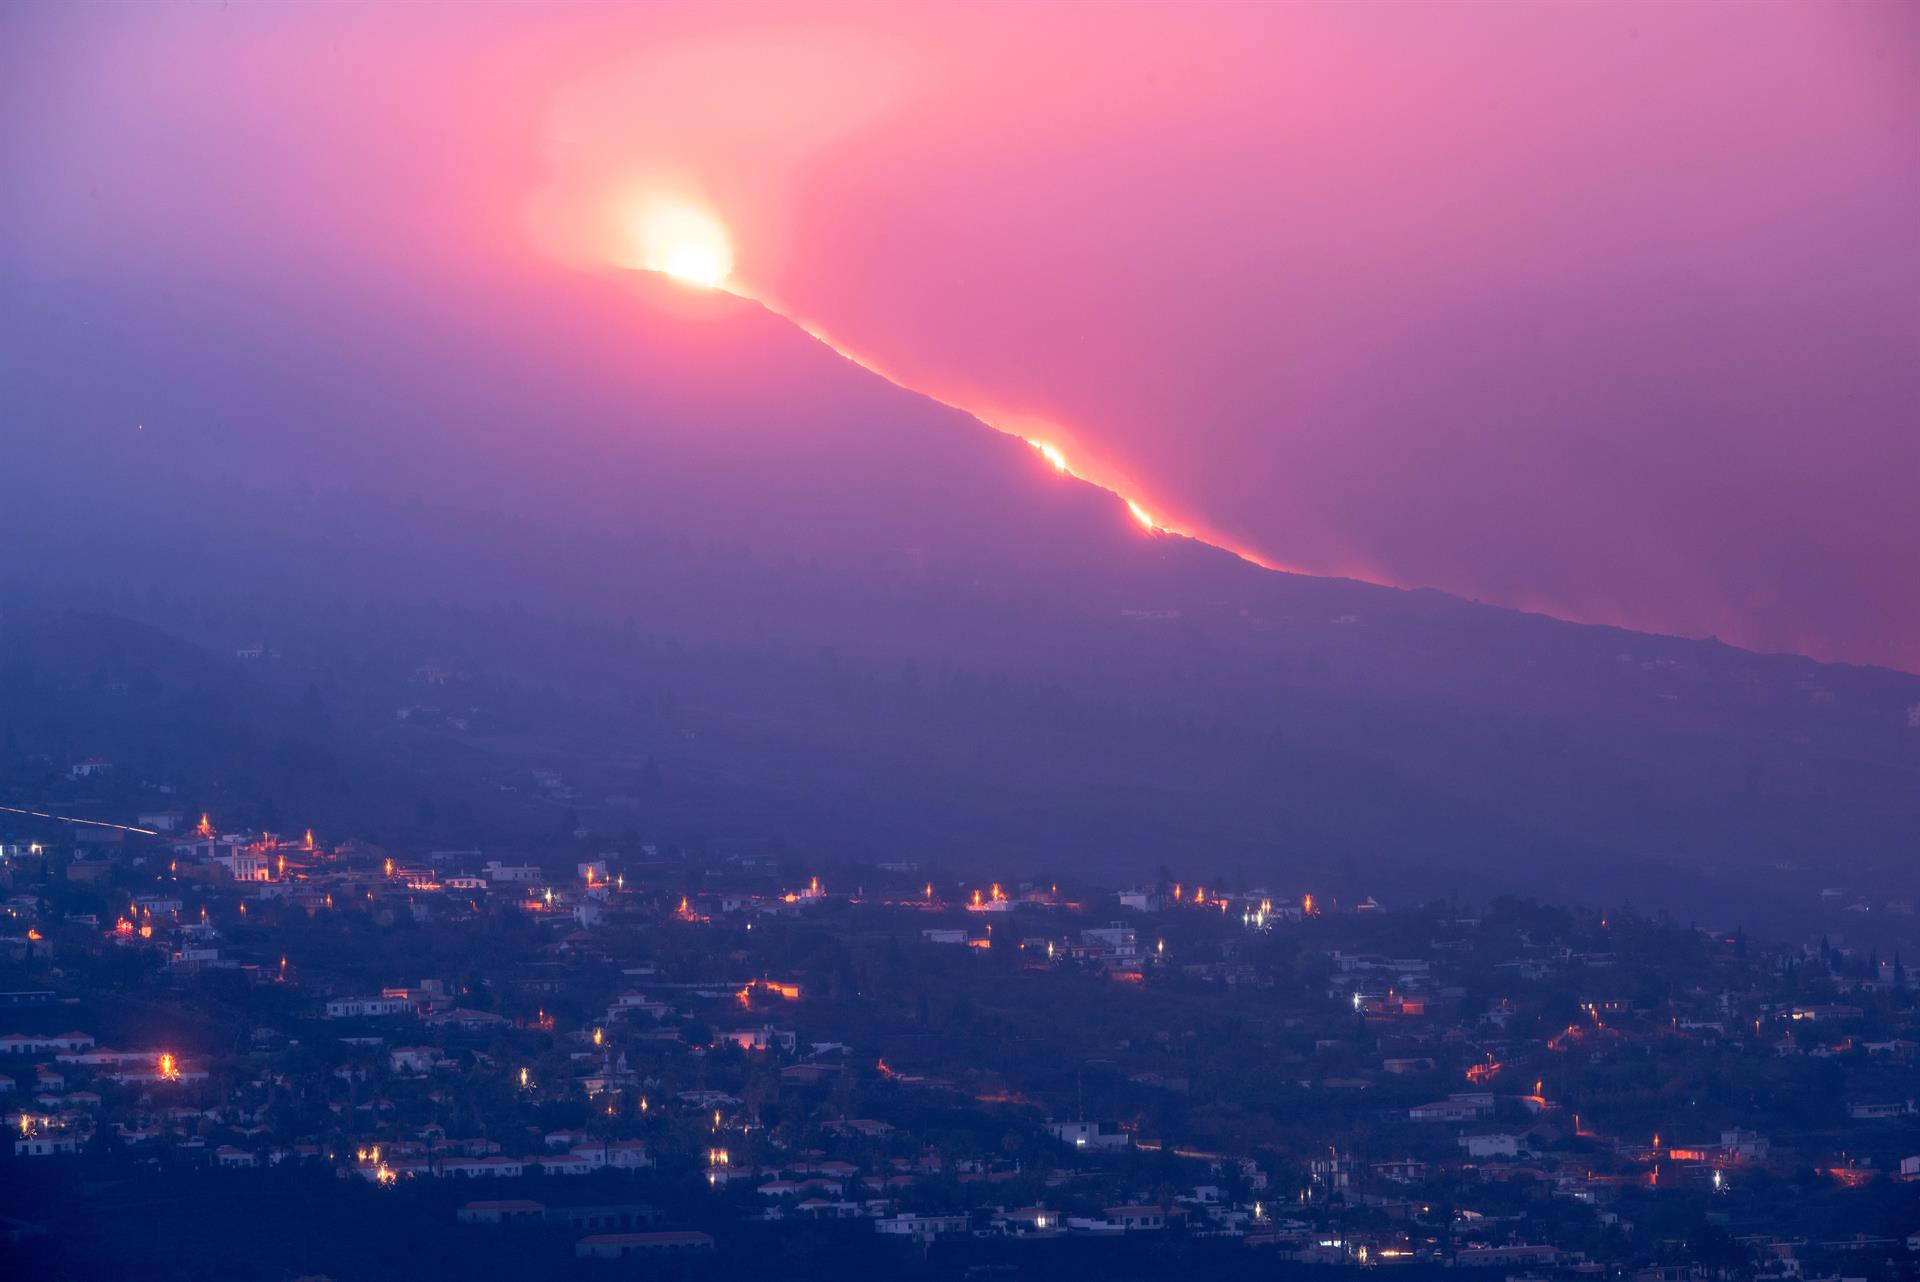 La lava fluye lentamente mientras sigue la actividad sísmica en La Palma